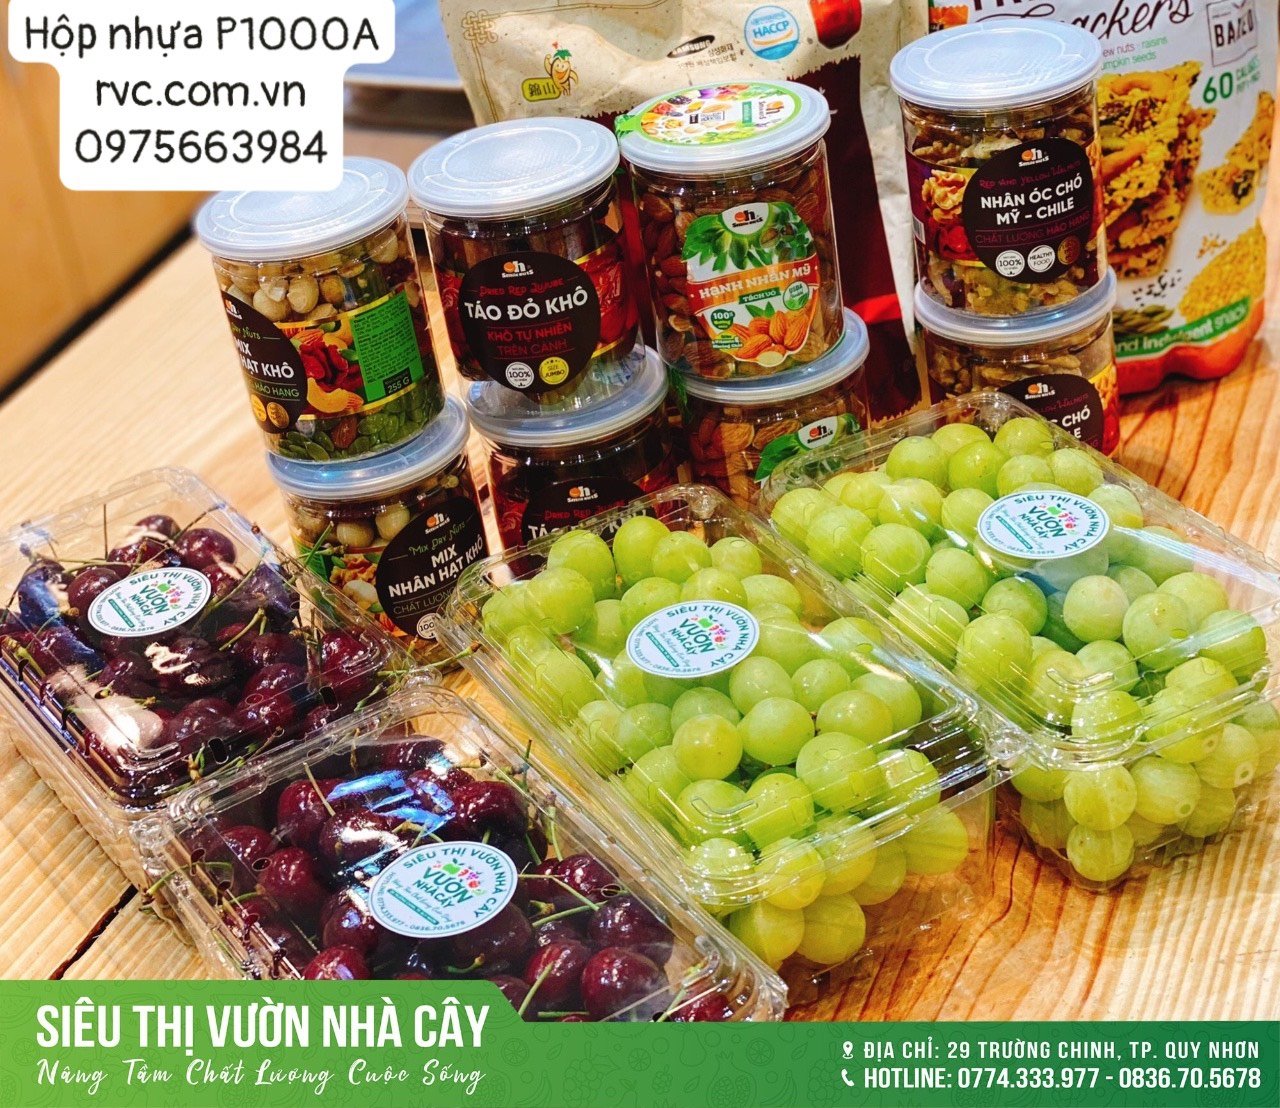 can - Chuyên cung cấp giá sỉ hộp nhựa đựng hoa quả cho cửa hàng trái cây  6190930_Hop_nhua_dung_trai_cay_18